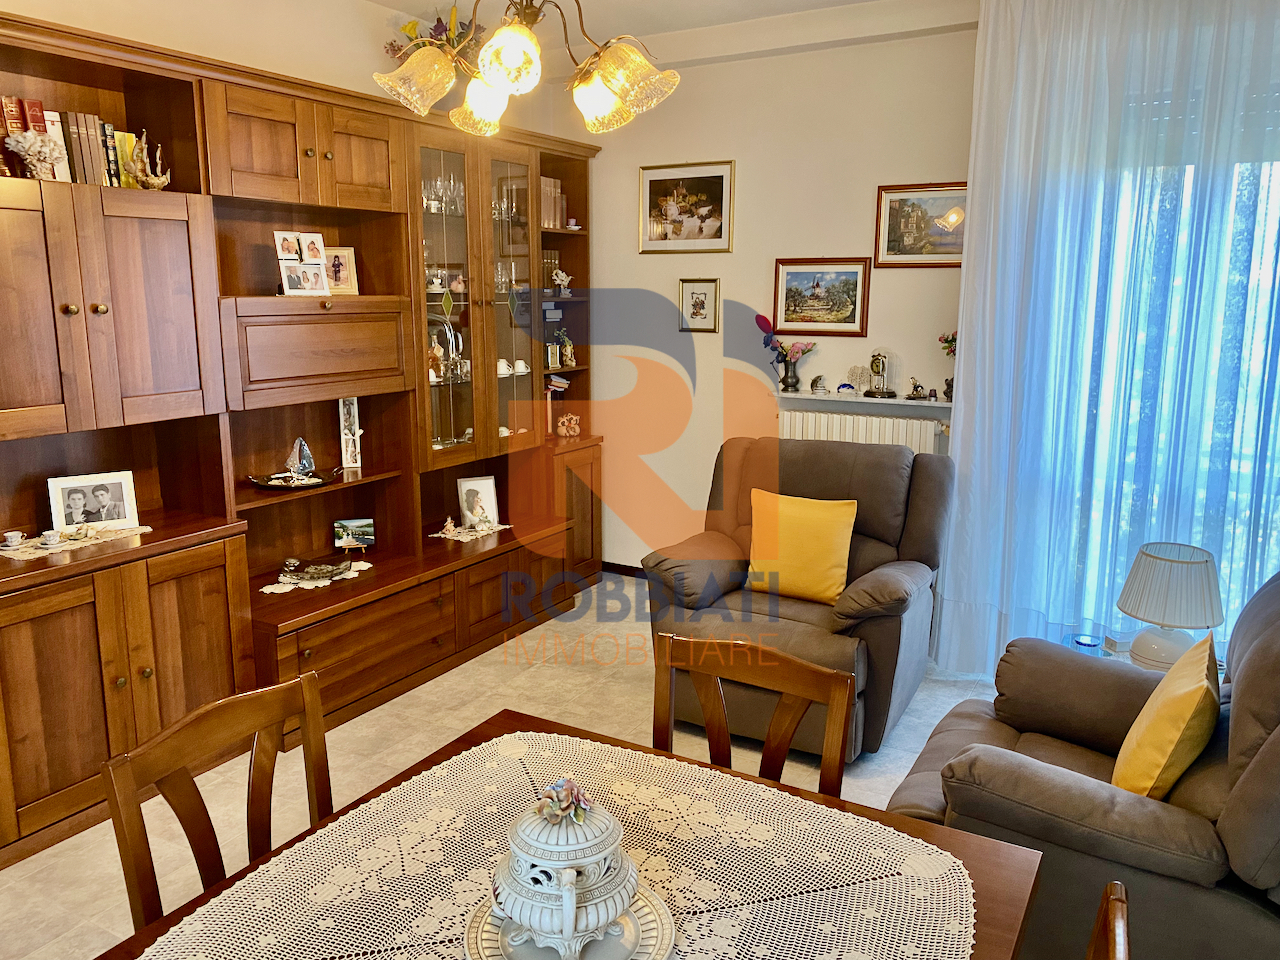 Appartamento in vendita a Zinasco, 3 locali, prezzo € 65.000 | PortaleAgenzieImmobiliari.it